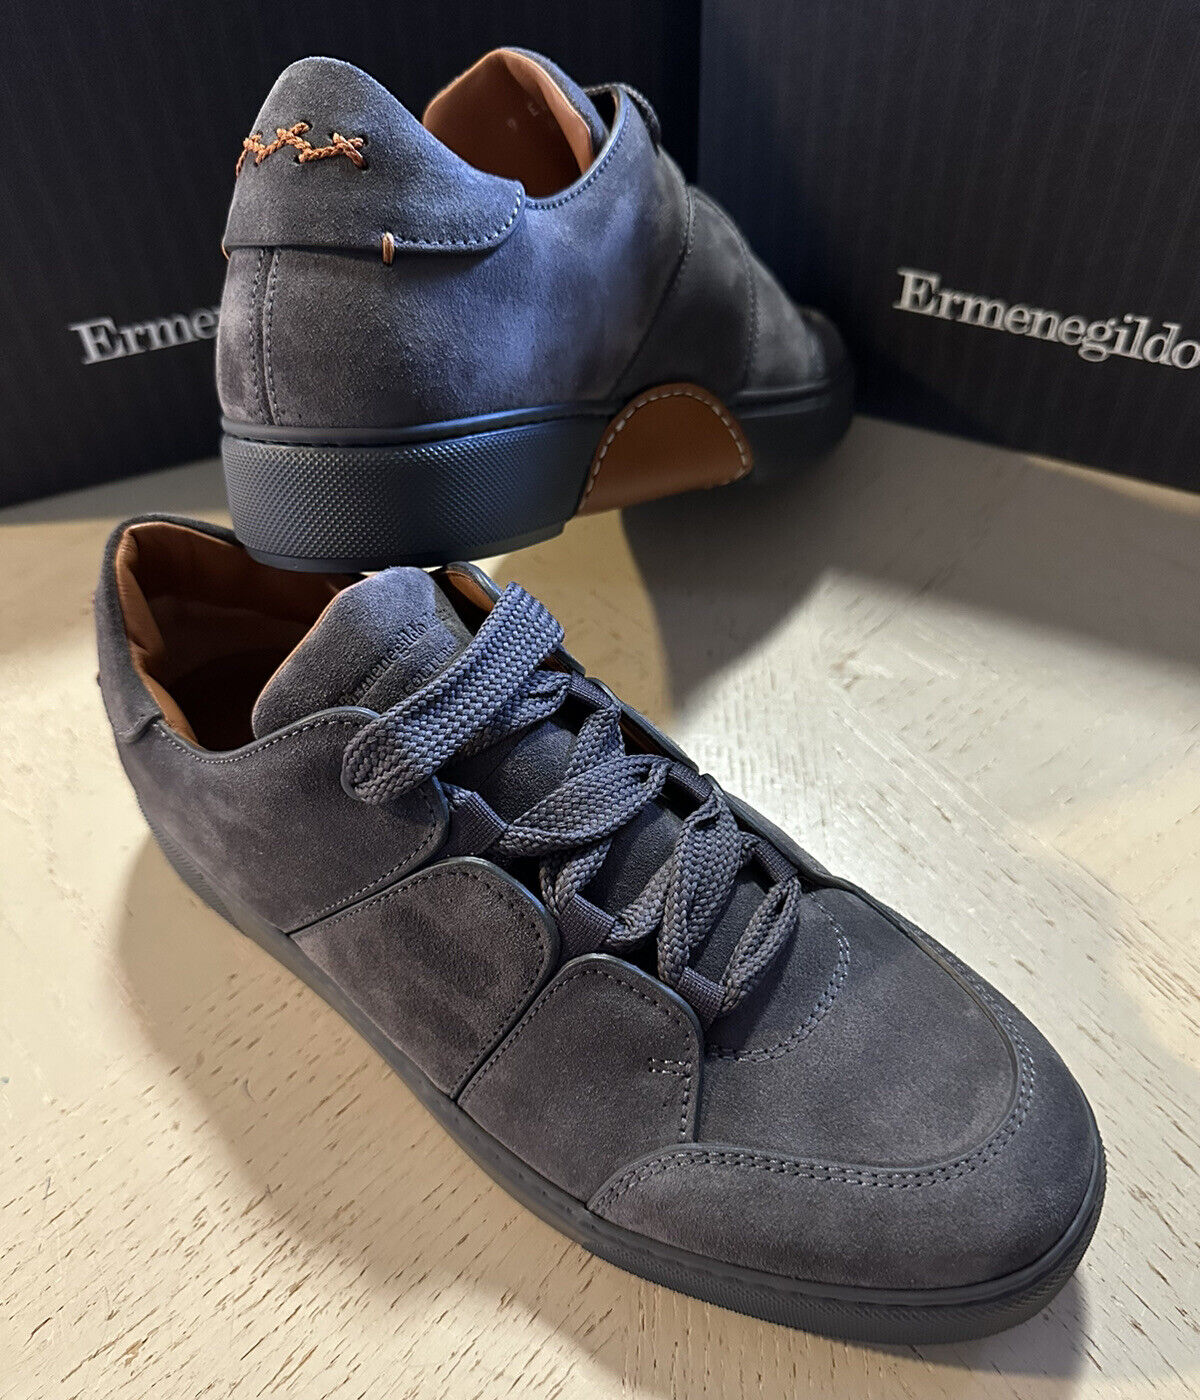 Новые кроссовки Ermenegildo Zegna Couture из замши/кожи, темно-серые, 7 долларов США/40 евро, $850